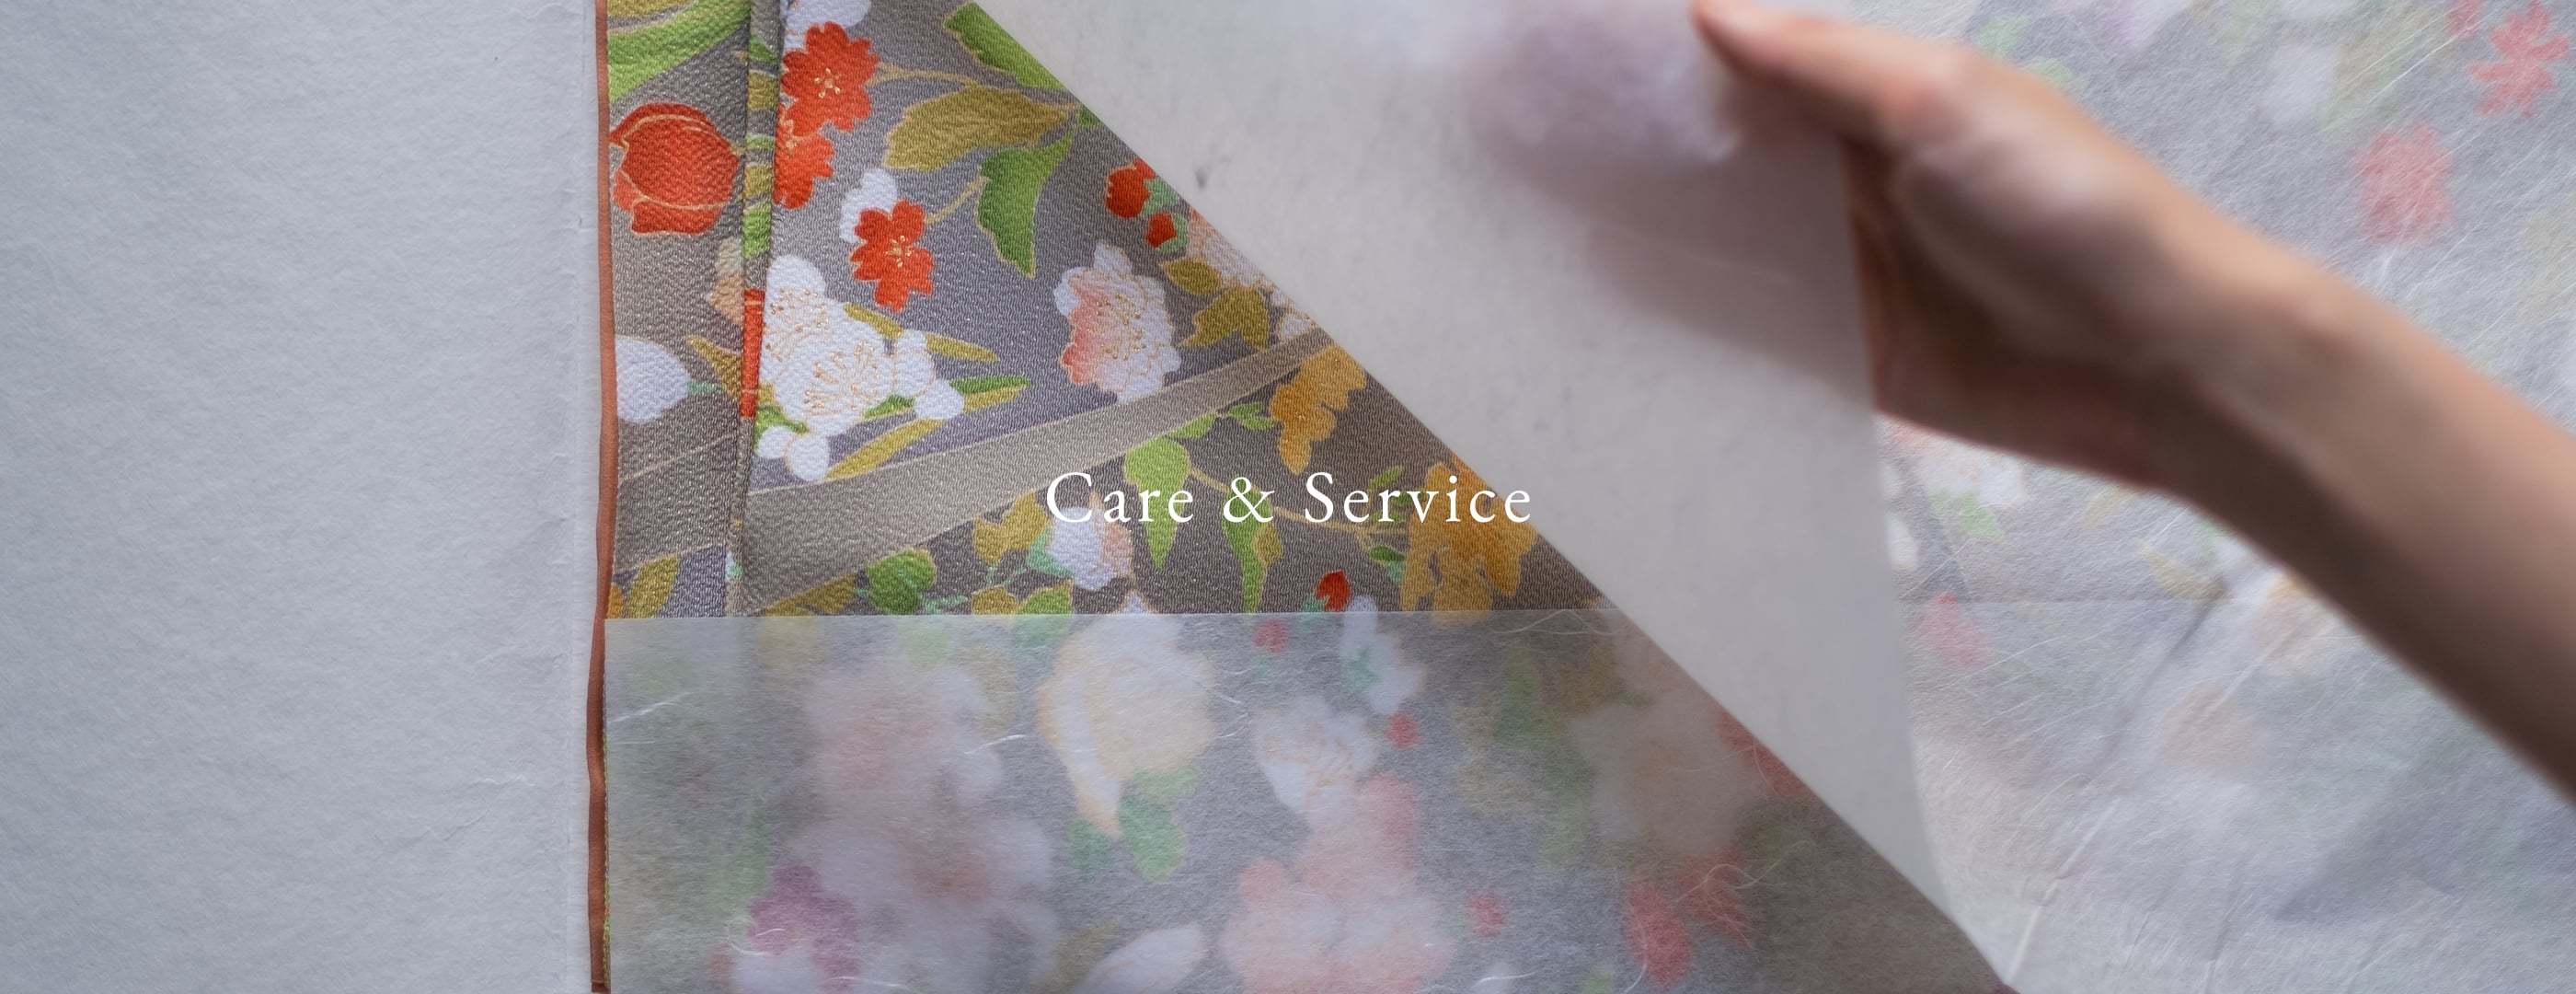 Care & Service